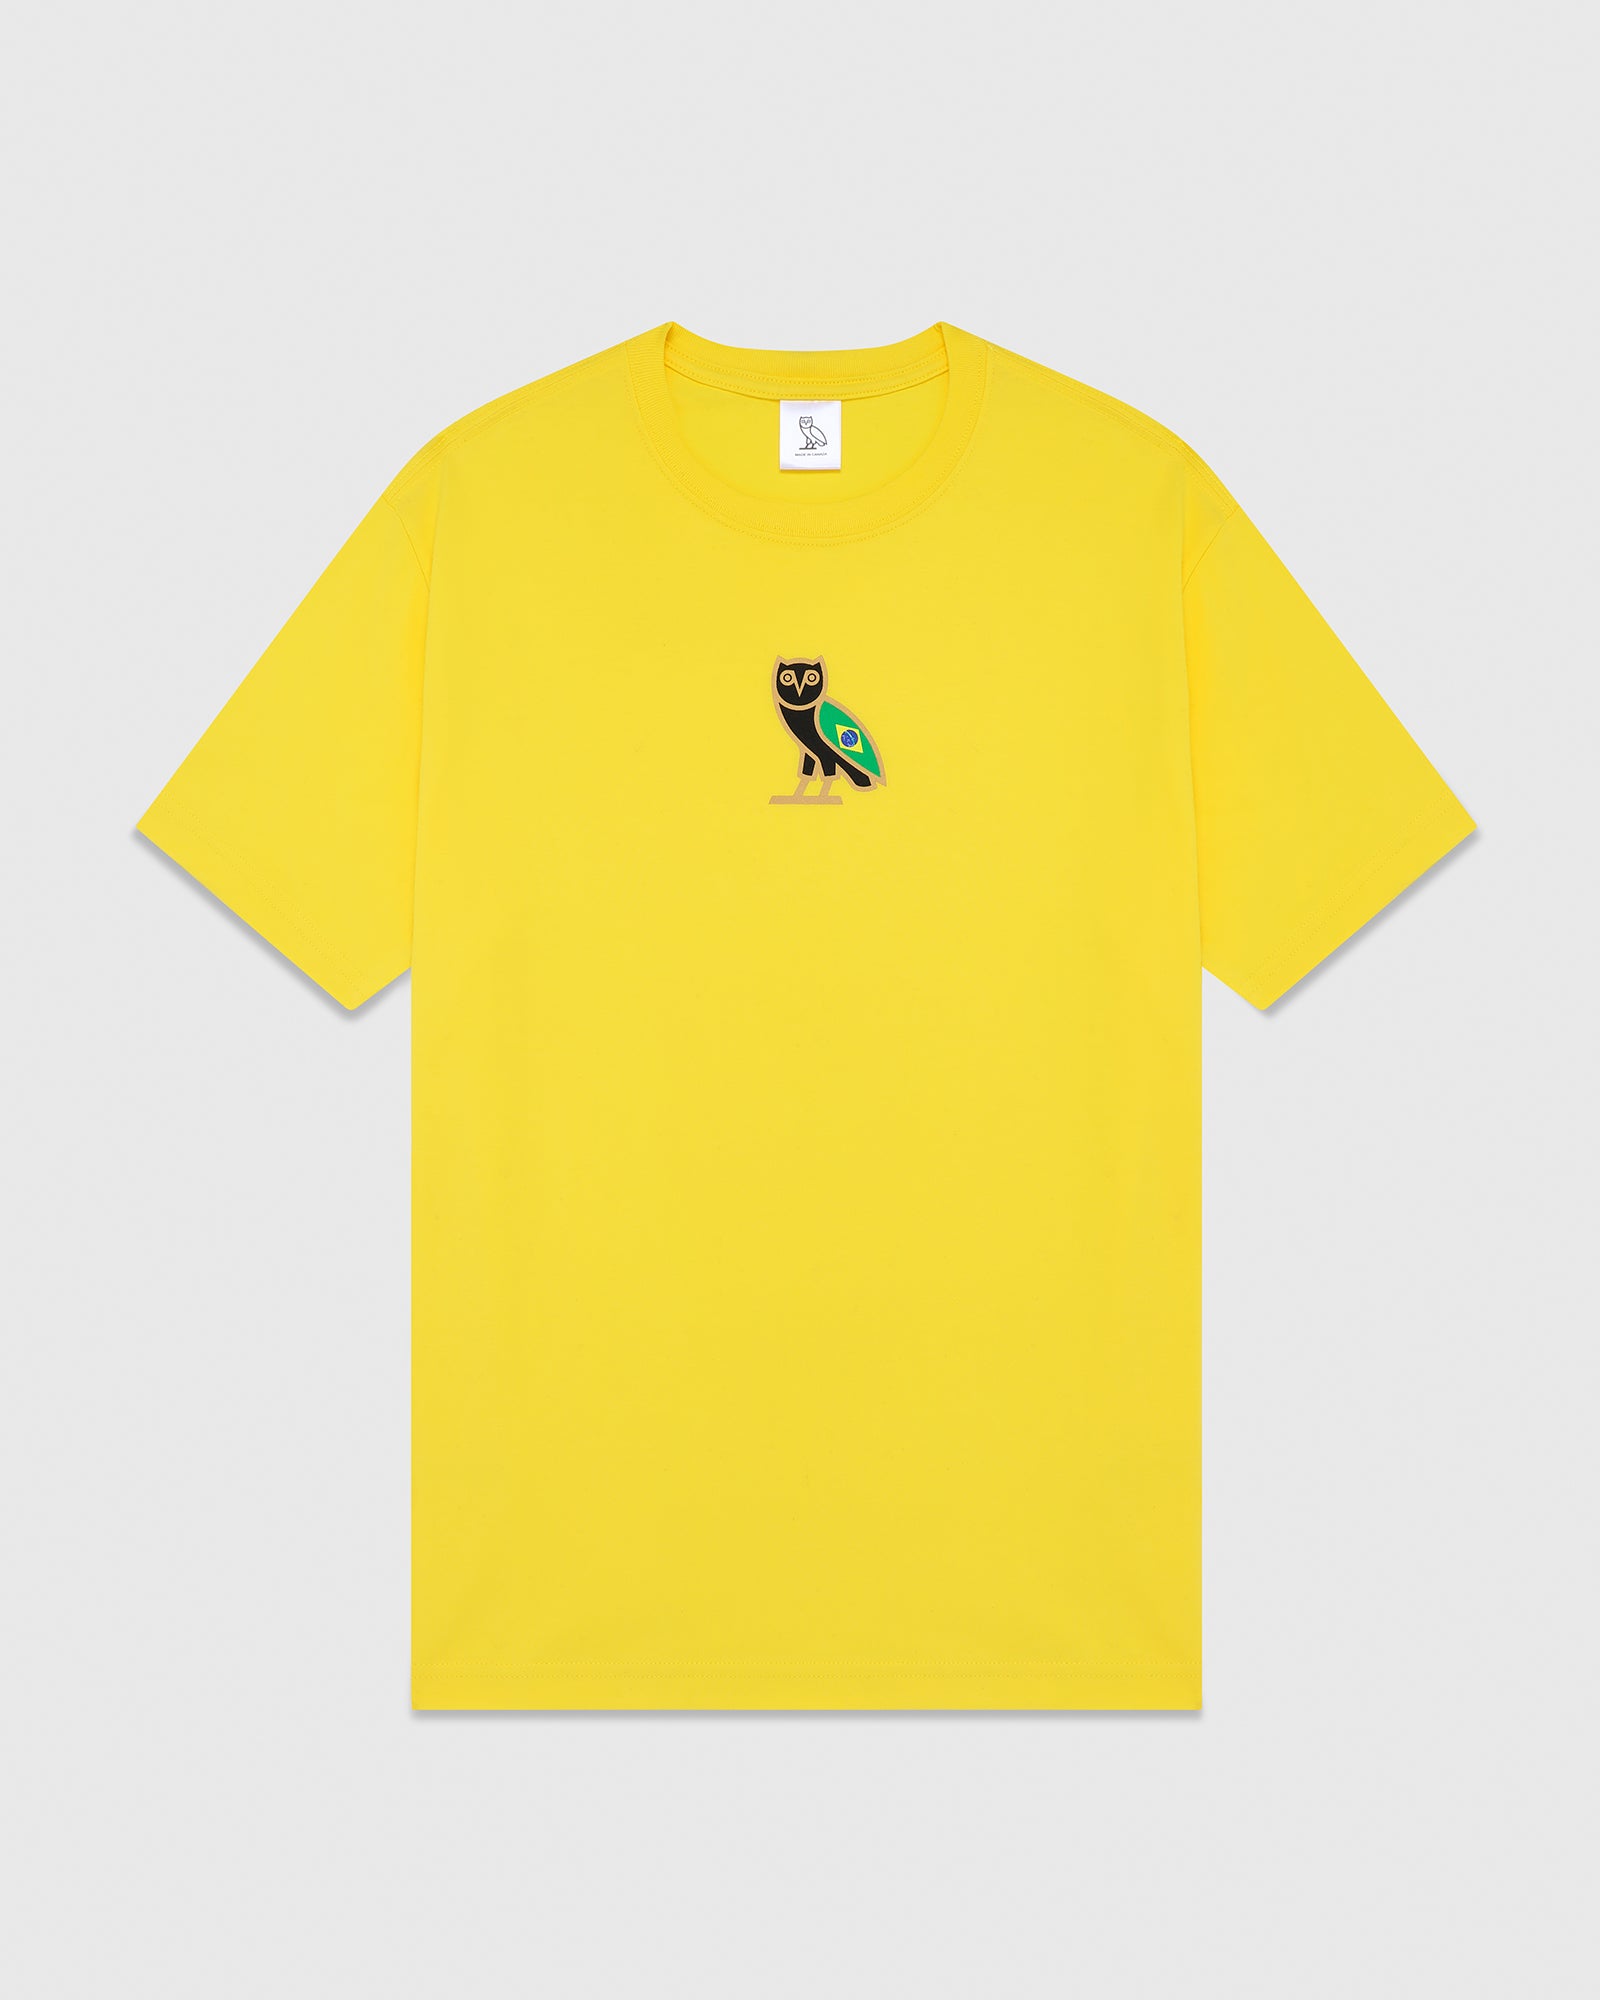 International Mini OG T-Shirt - Brazil Yellow